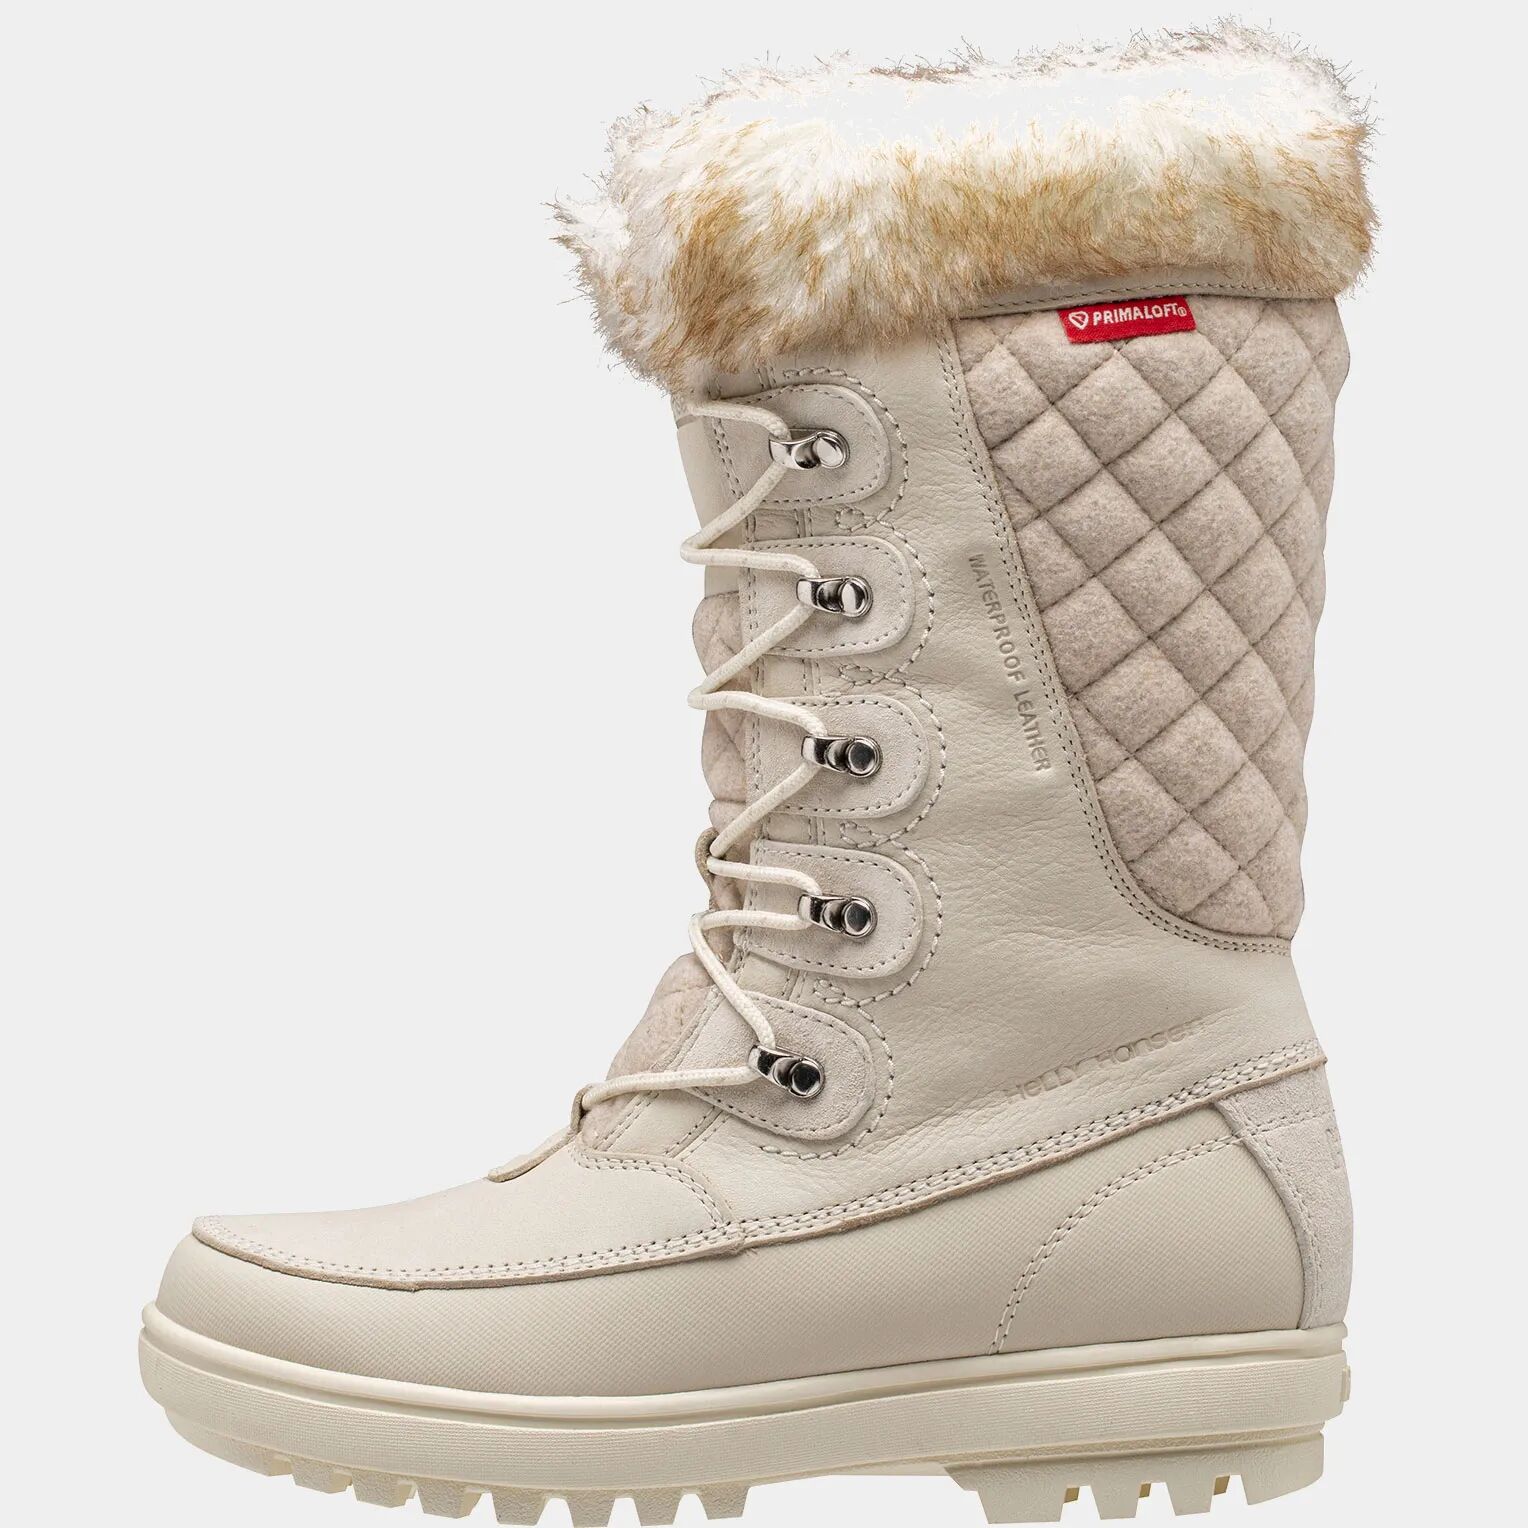 Helly Hansen Women's Garibaldi VL Snow Boots Beige 6 - Cream Sno Beige - Female